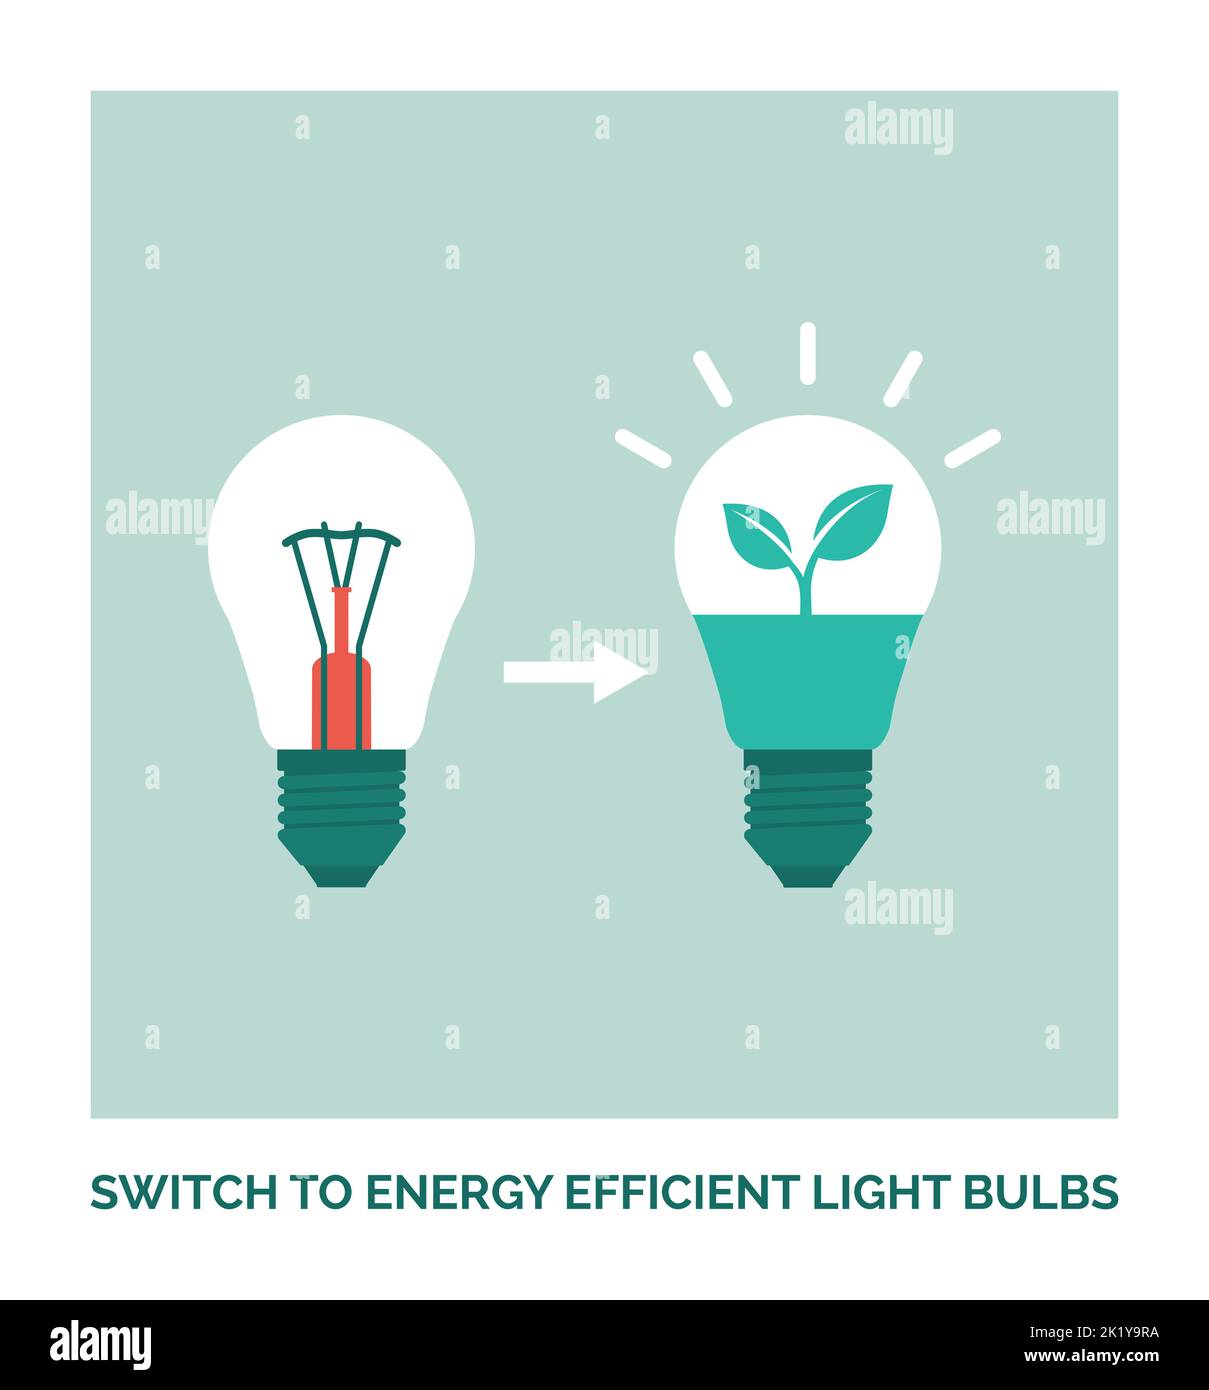 Maison écologique : passez aux ampoules à économie d'énergie, affiche sur le développement durable Illustration de Vecteur